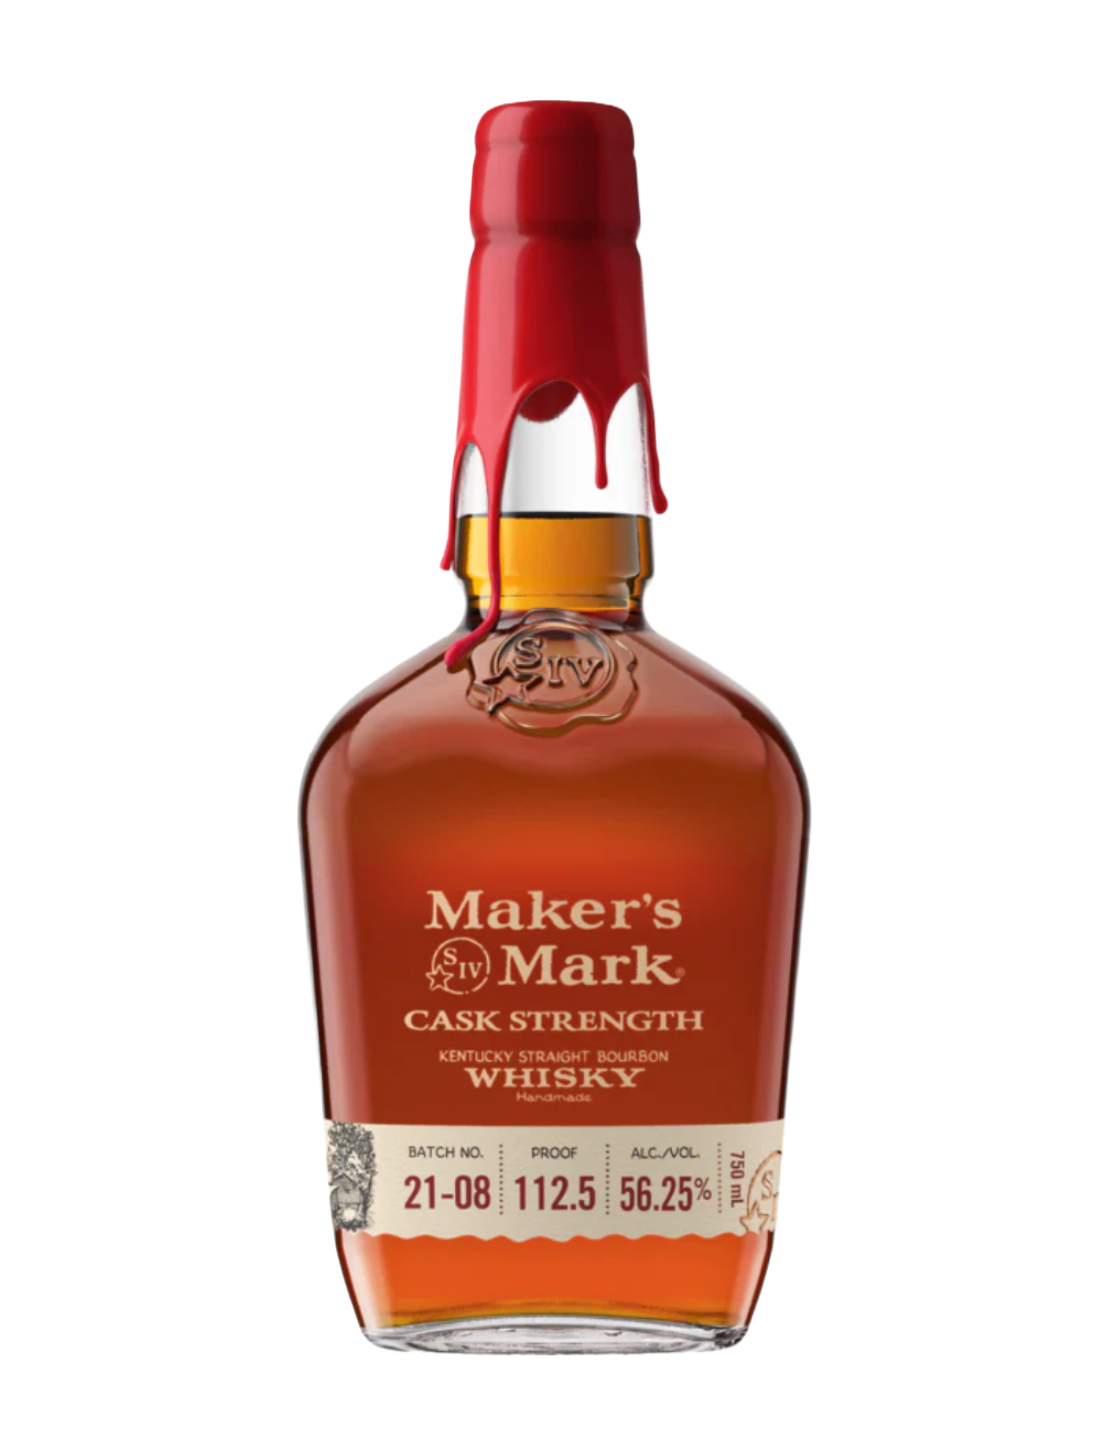 An elegant bottle of Maker's Mark Cask Strength Kentucky Straight Bourbon in front of a plain white background